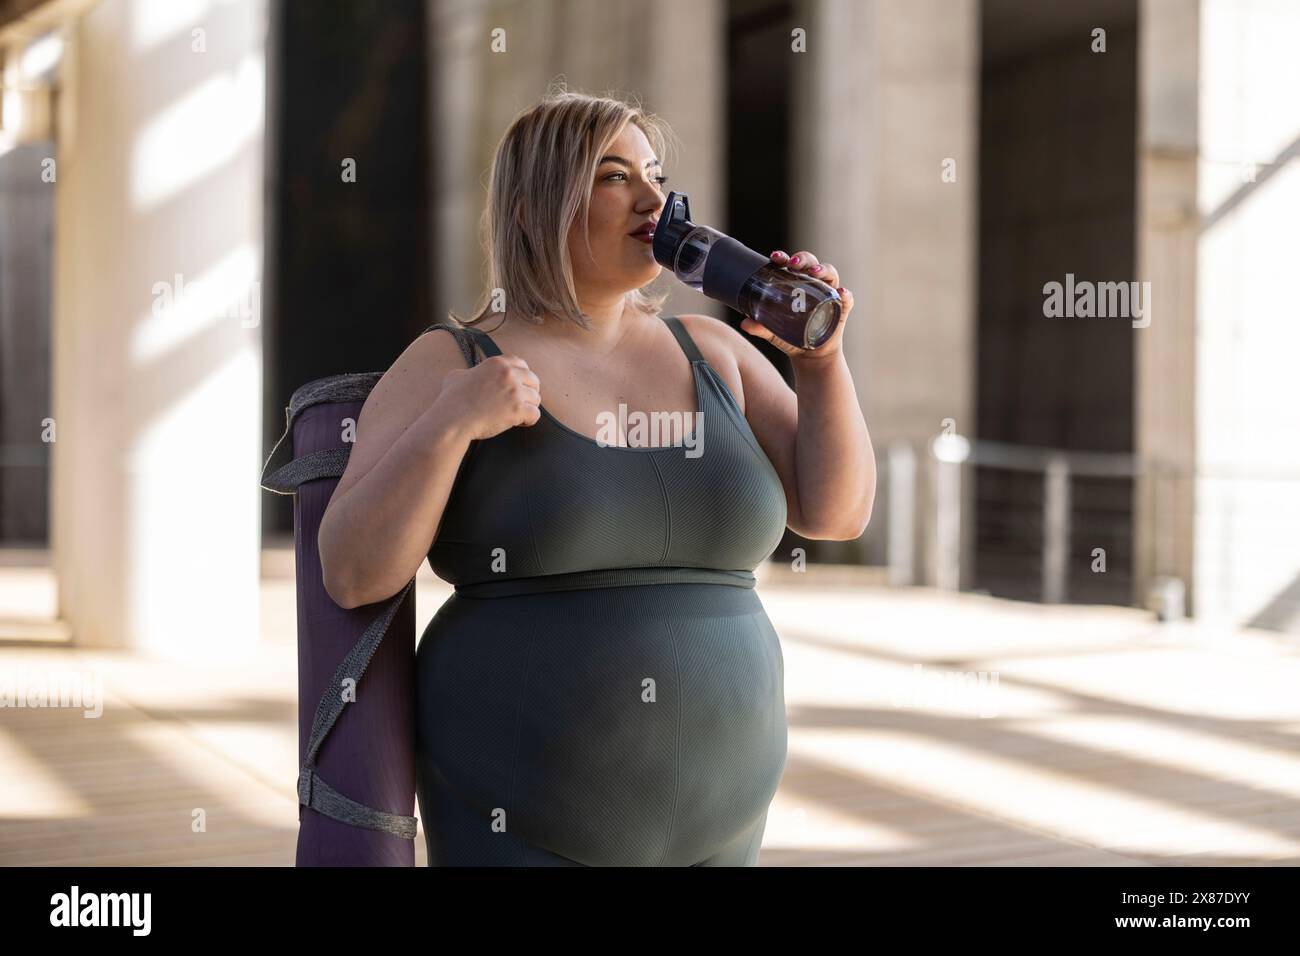 Kurvige junge Frau trinkt Wasser durch die Flasche Stockfoto